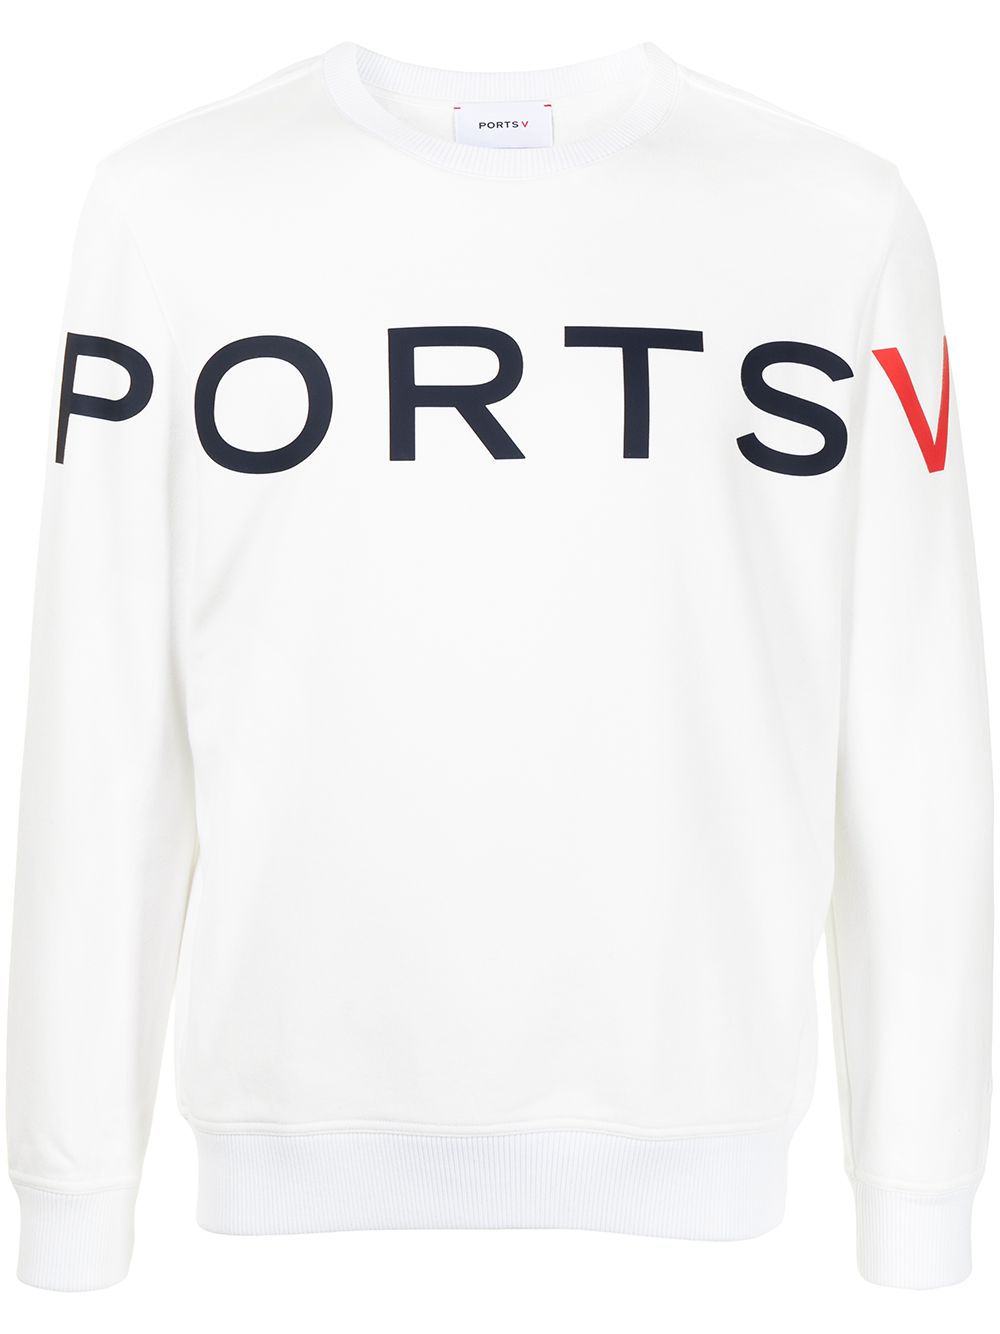 фото Ports v свитер с длинными рукавами и логотипом